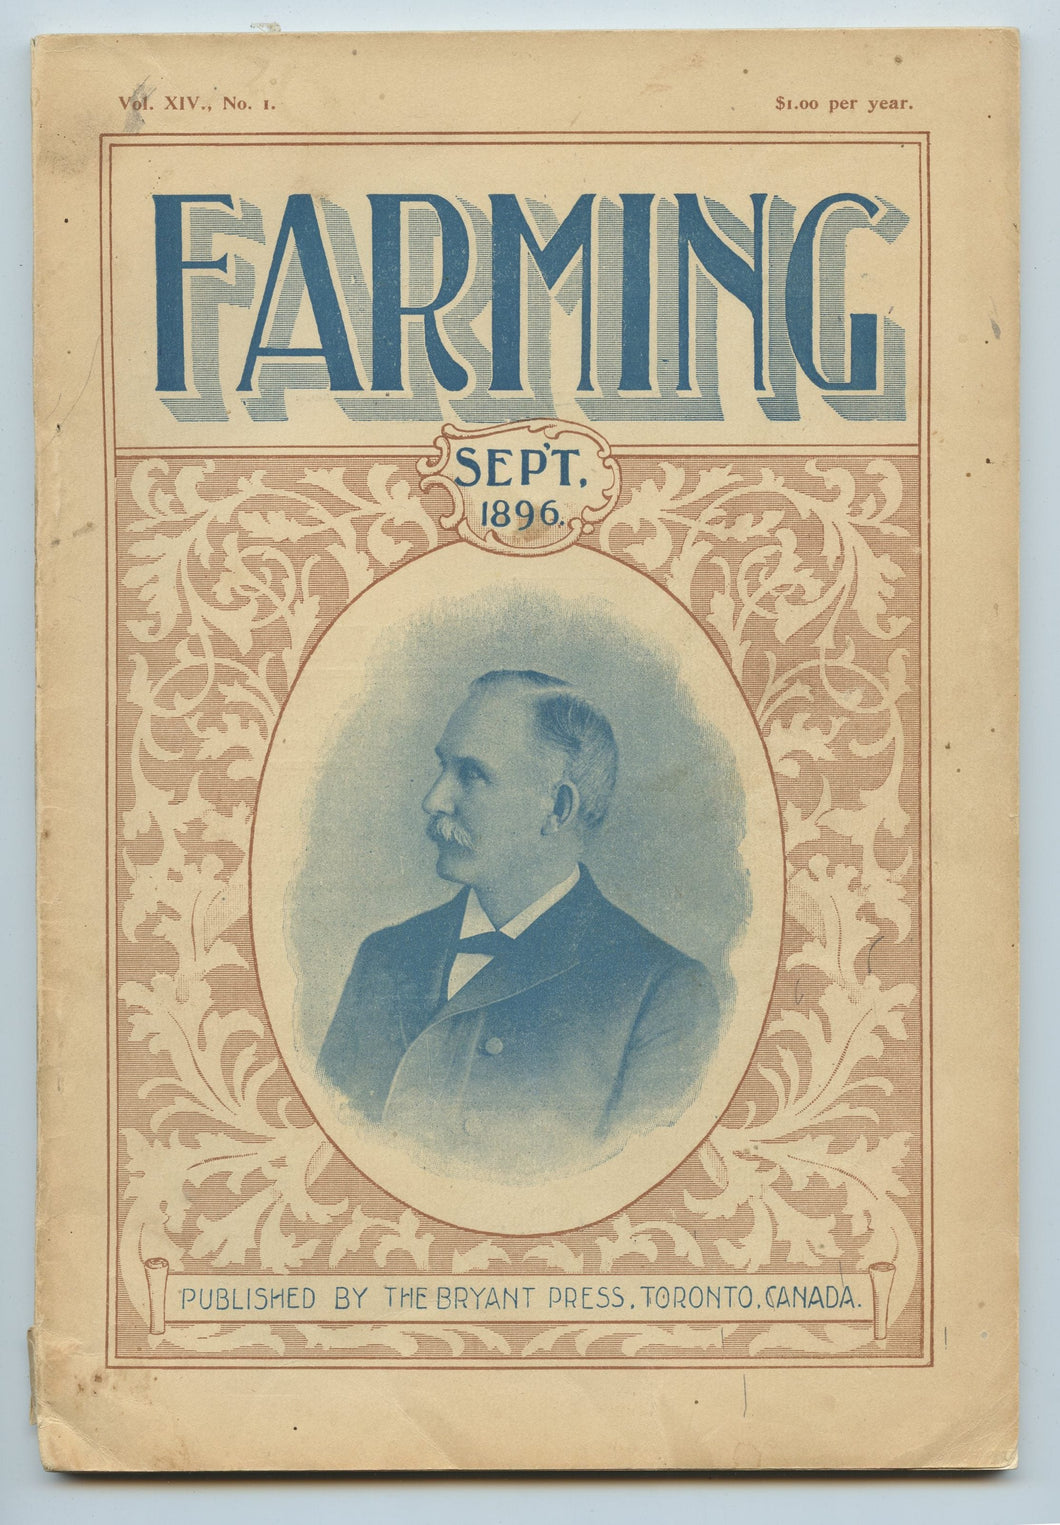 Farming, Sept. 1896